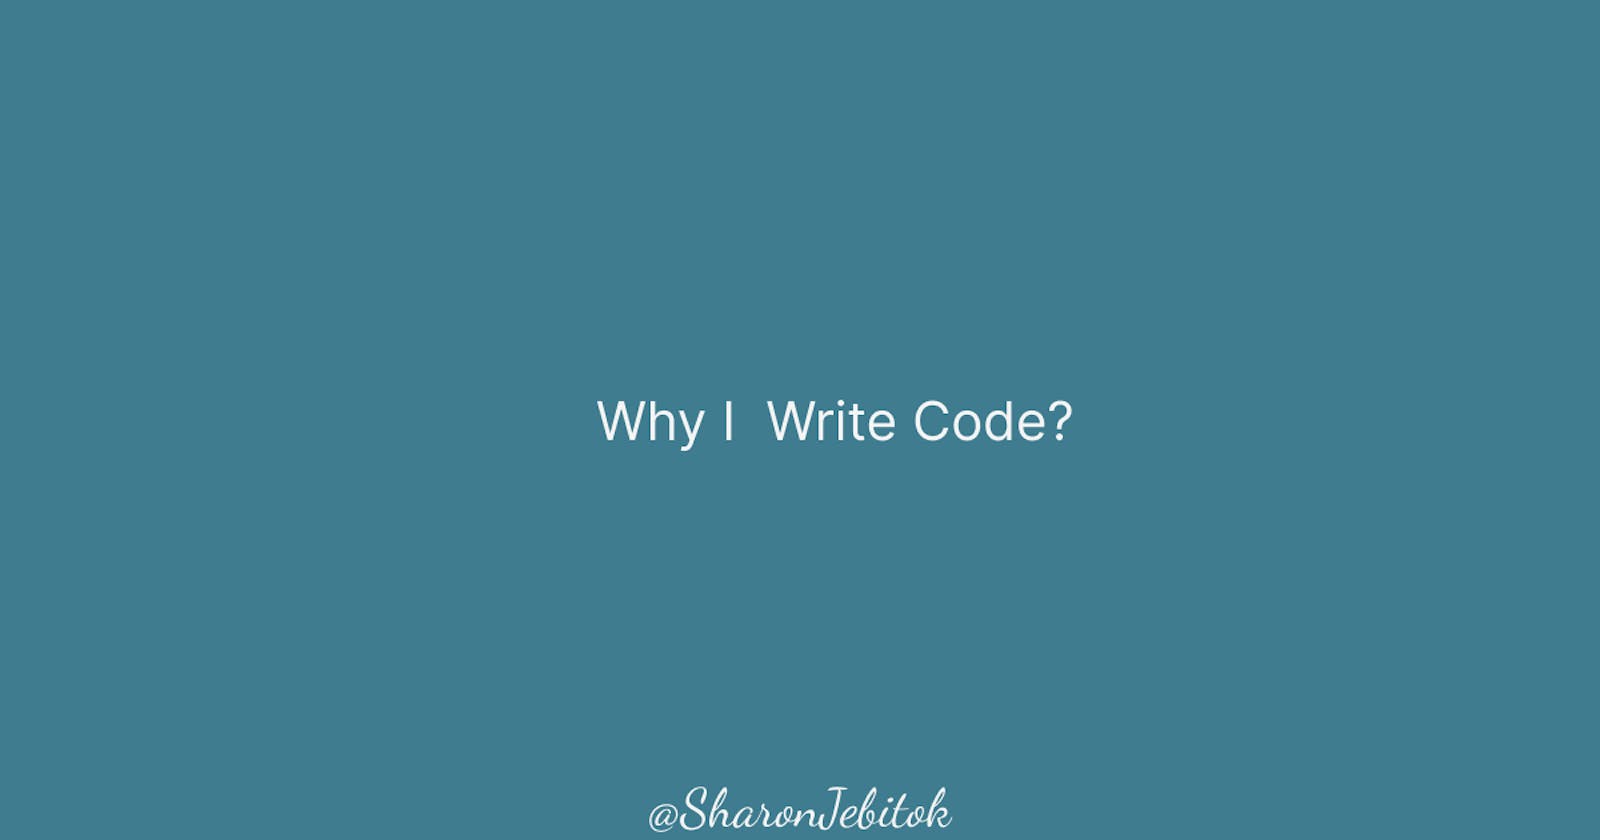 Why I write Code